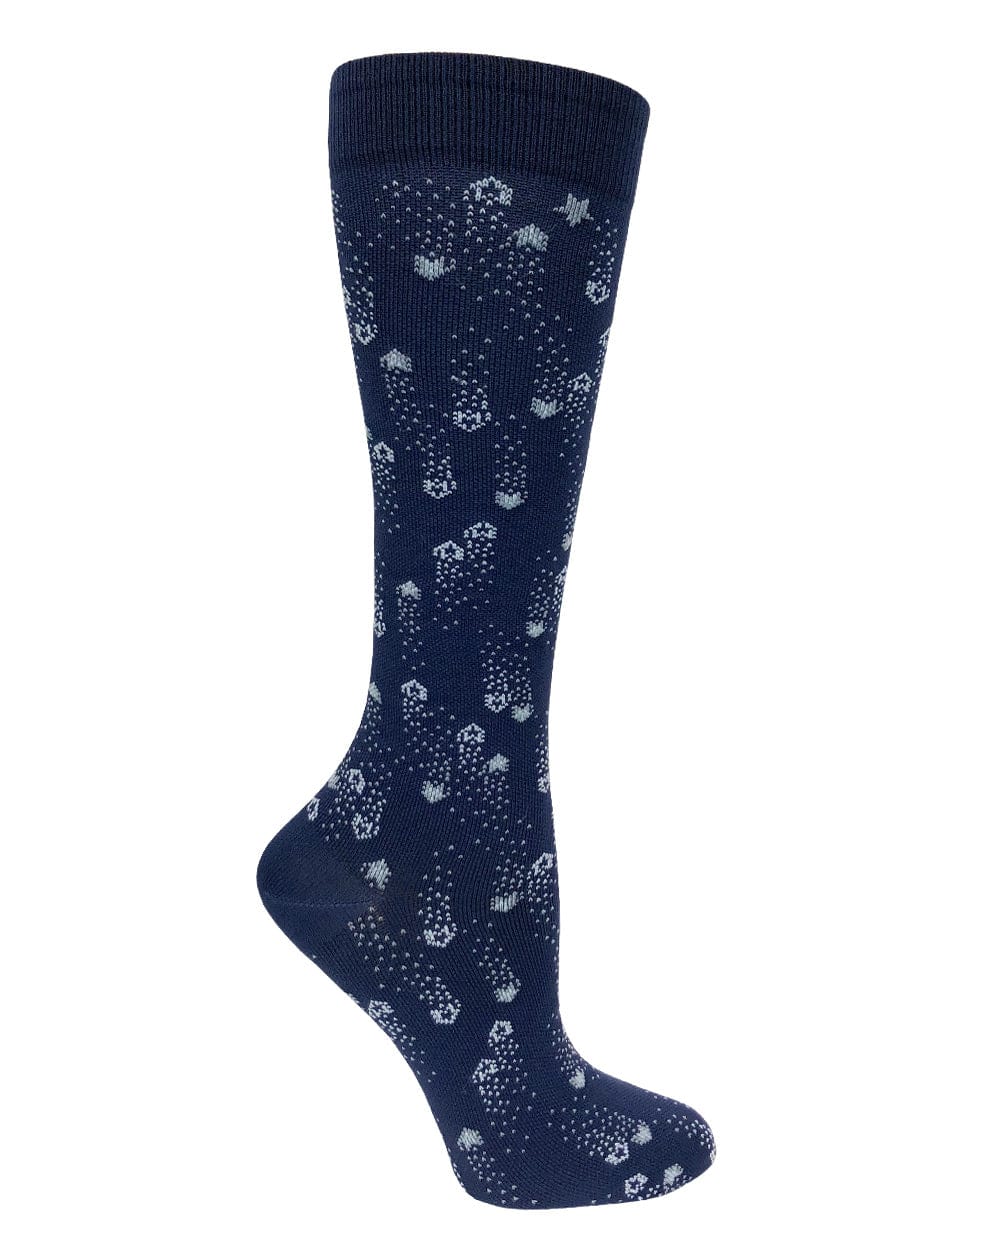 Prestige Medical Socks Shooting Stars Navy Prestige 30cm Premium Knit Compression Socks